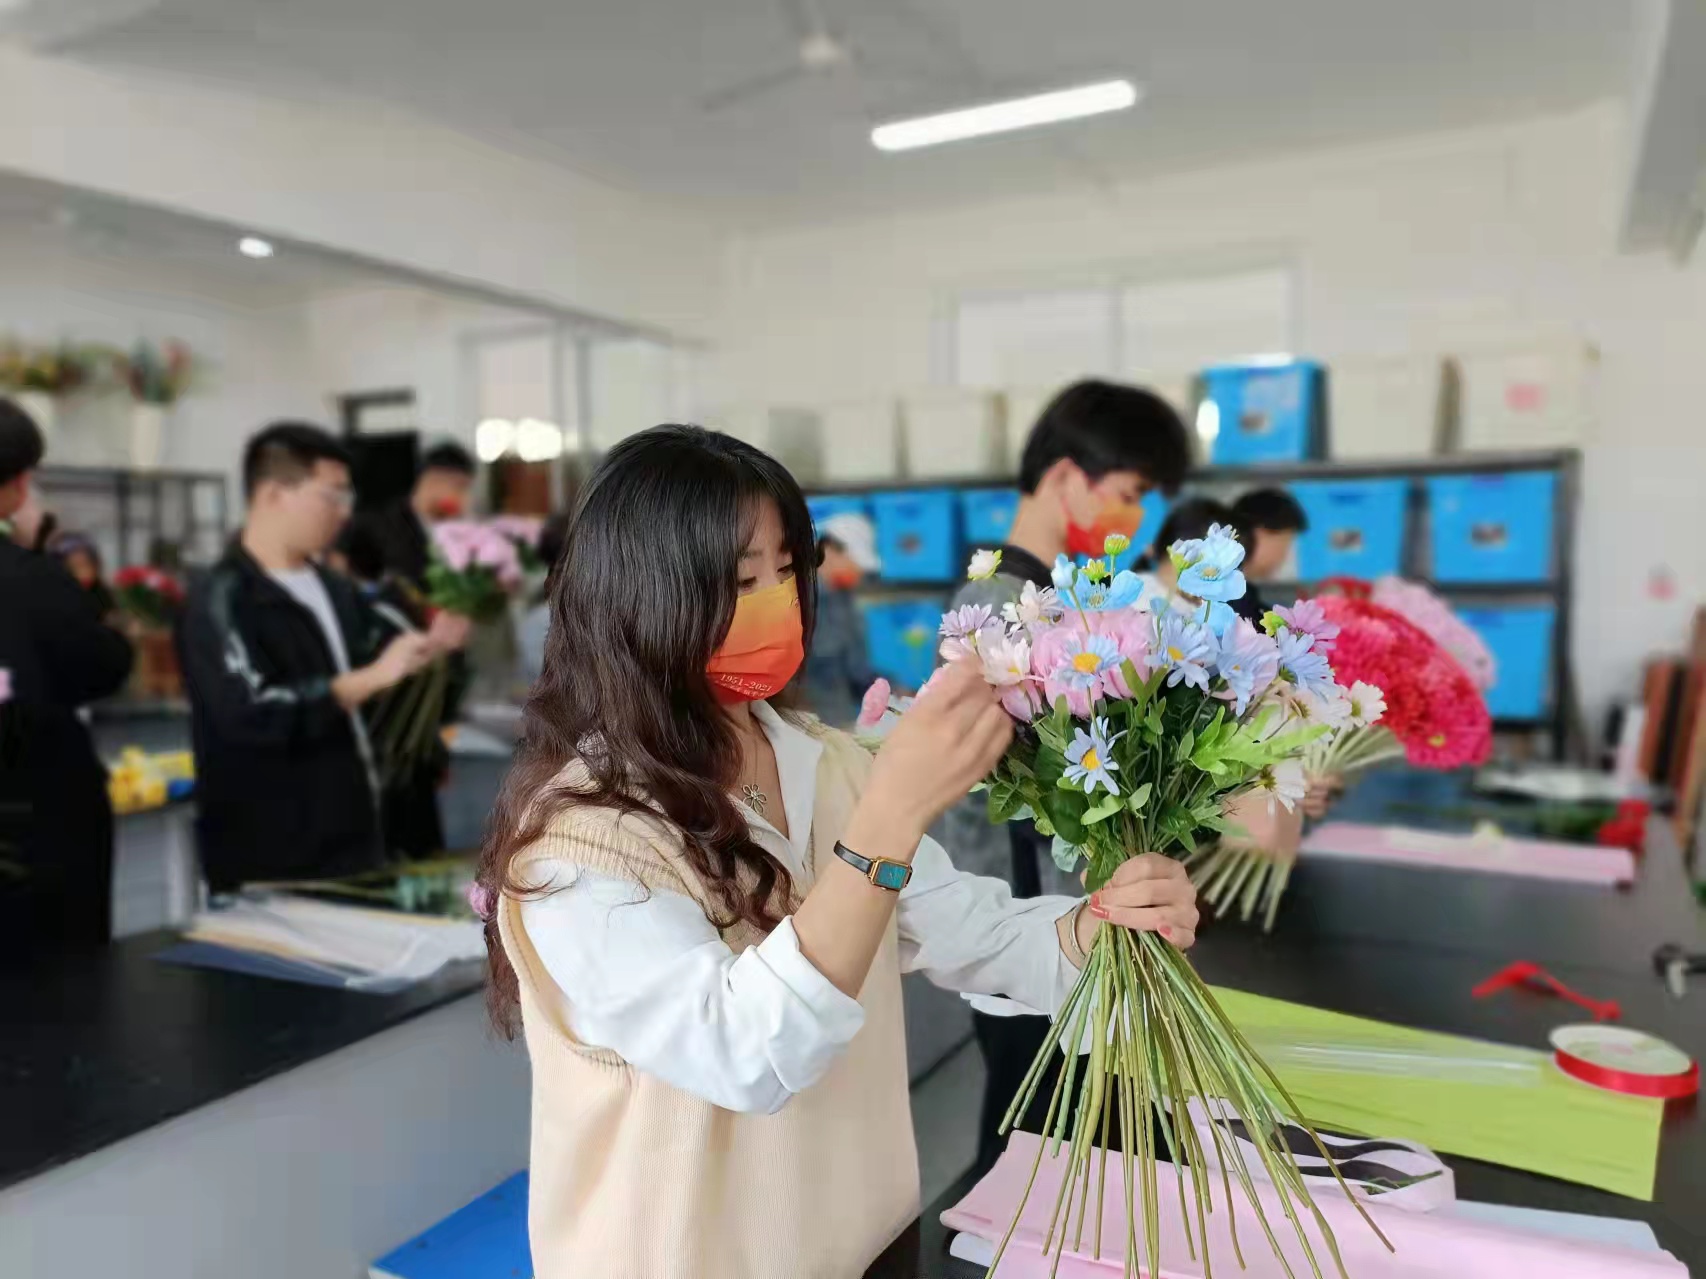 11.19农业工程学院在3号楼花艺室举办插花展示与花束制作活动.jpg